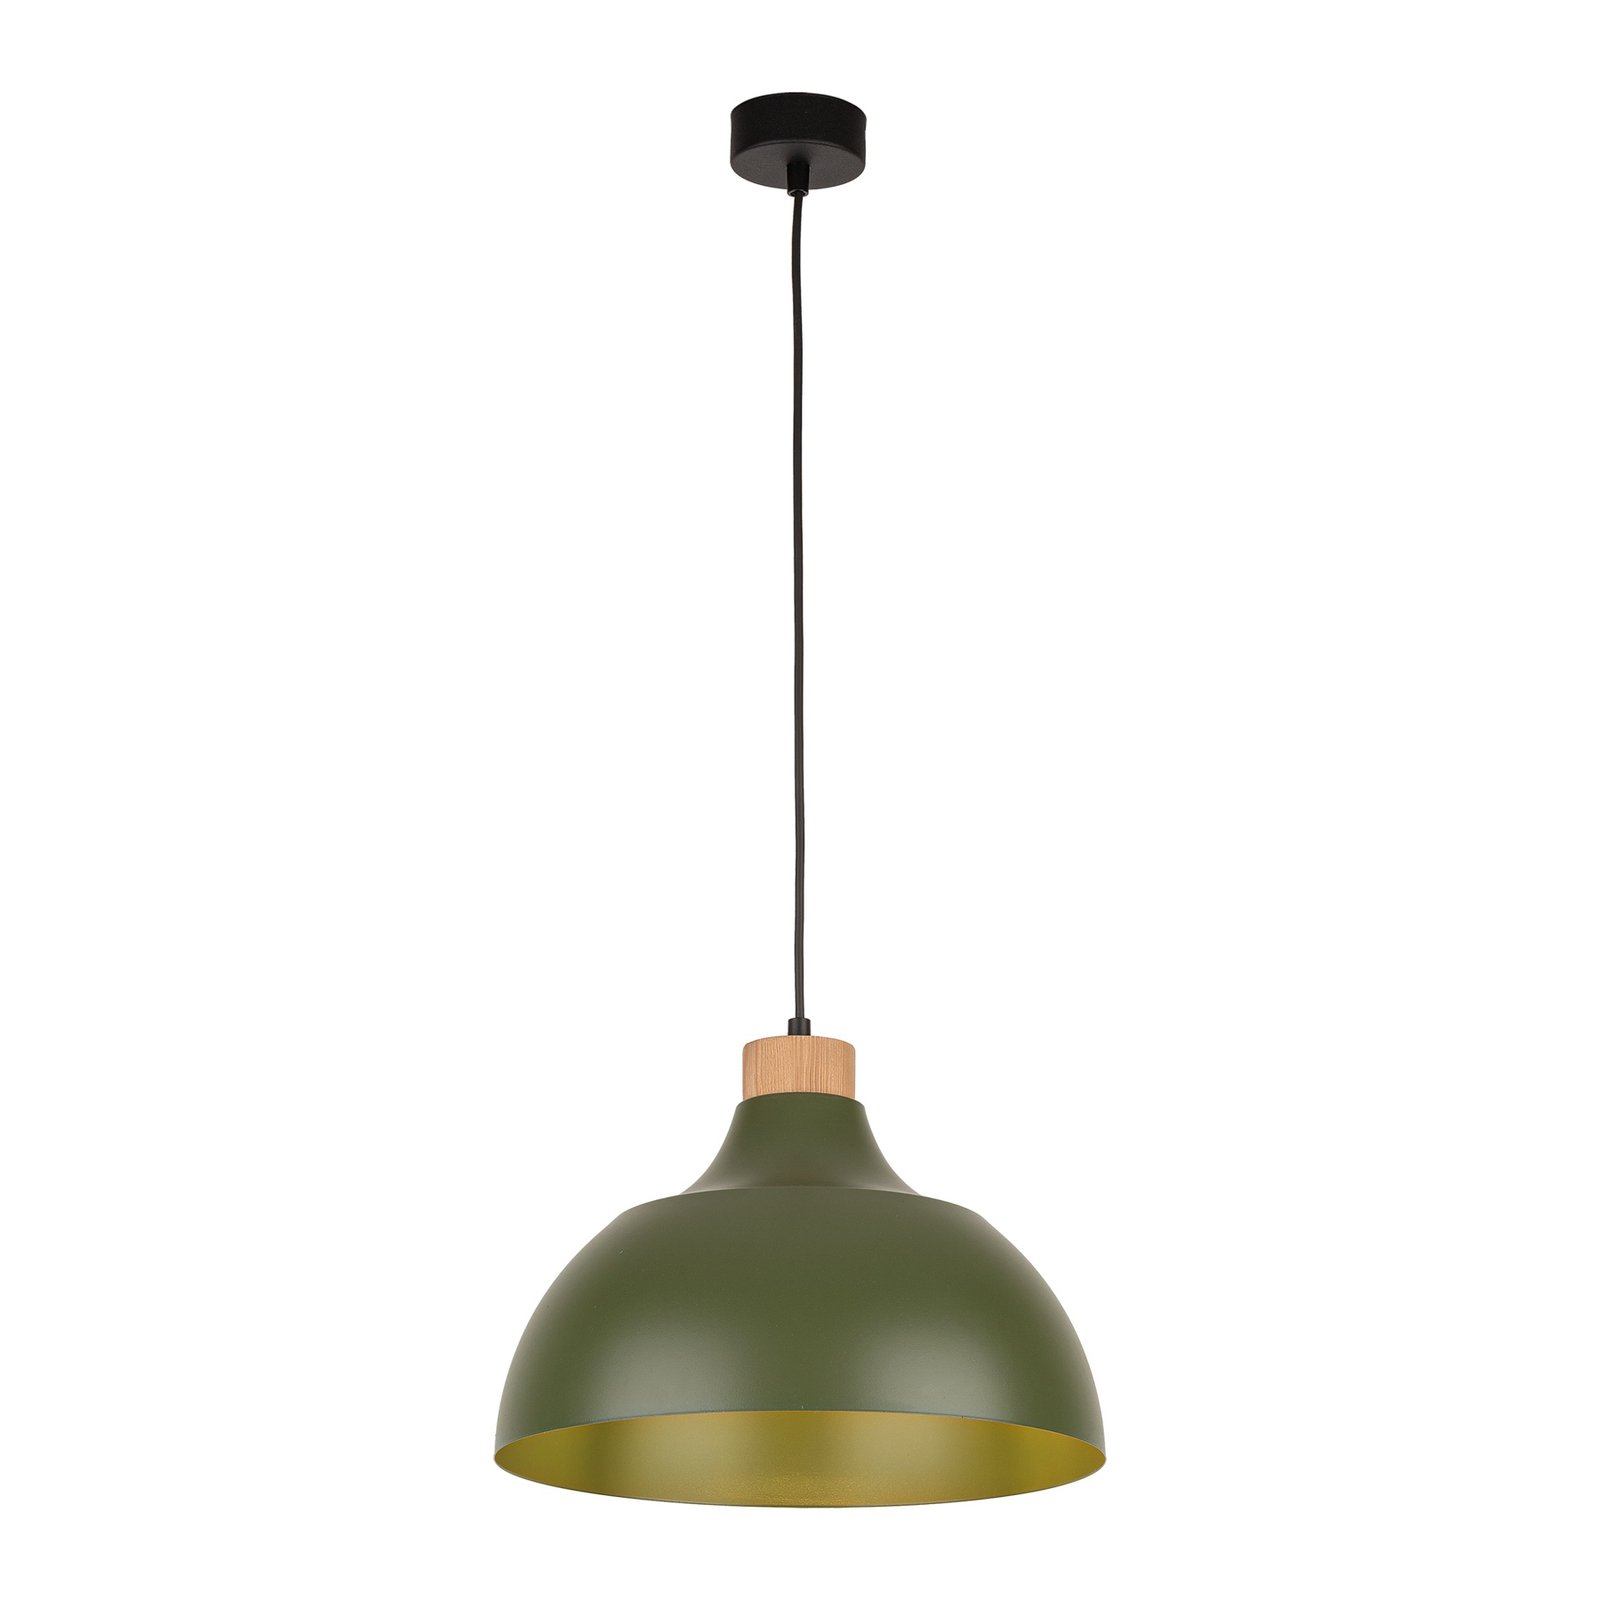 Lampa wisząca Kaitt firmy Envostar, detal z drewna, Ø 34 cm, zielona